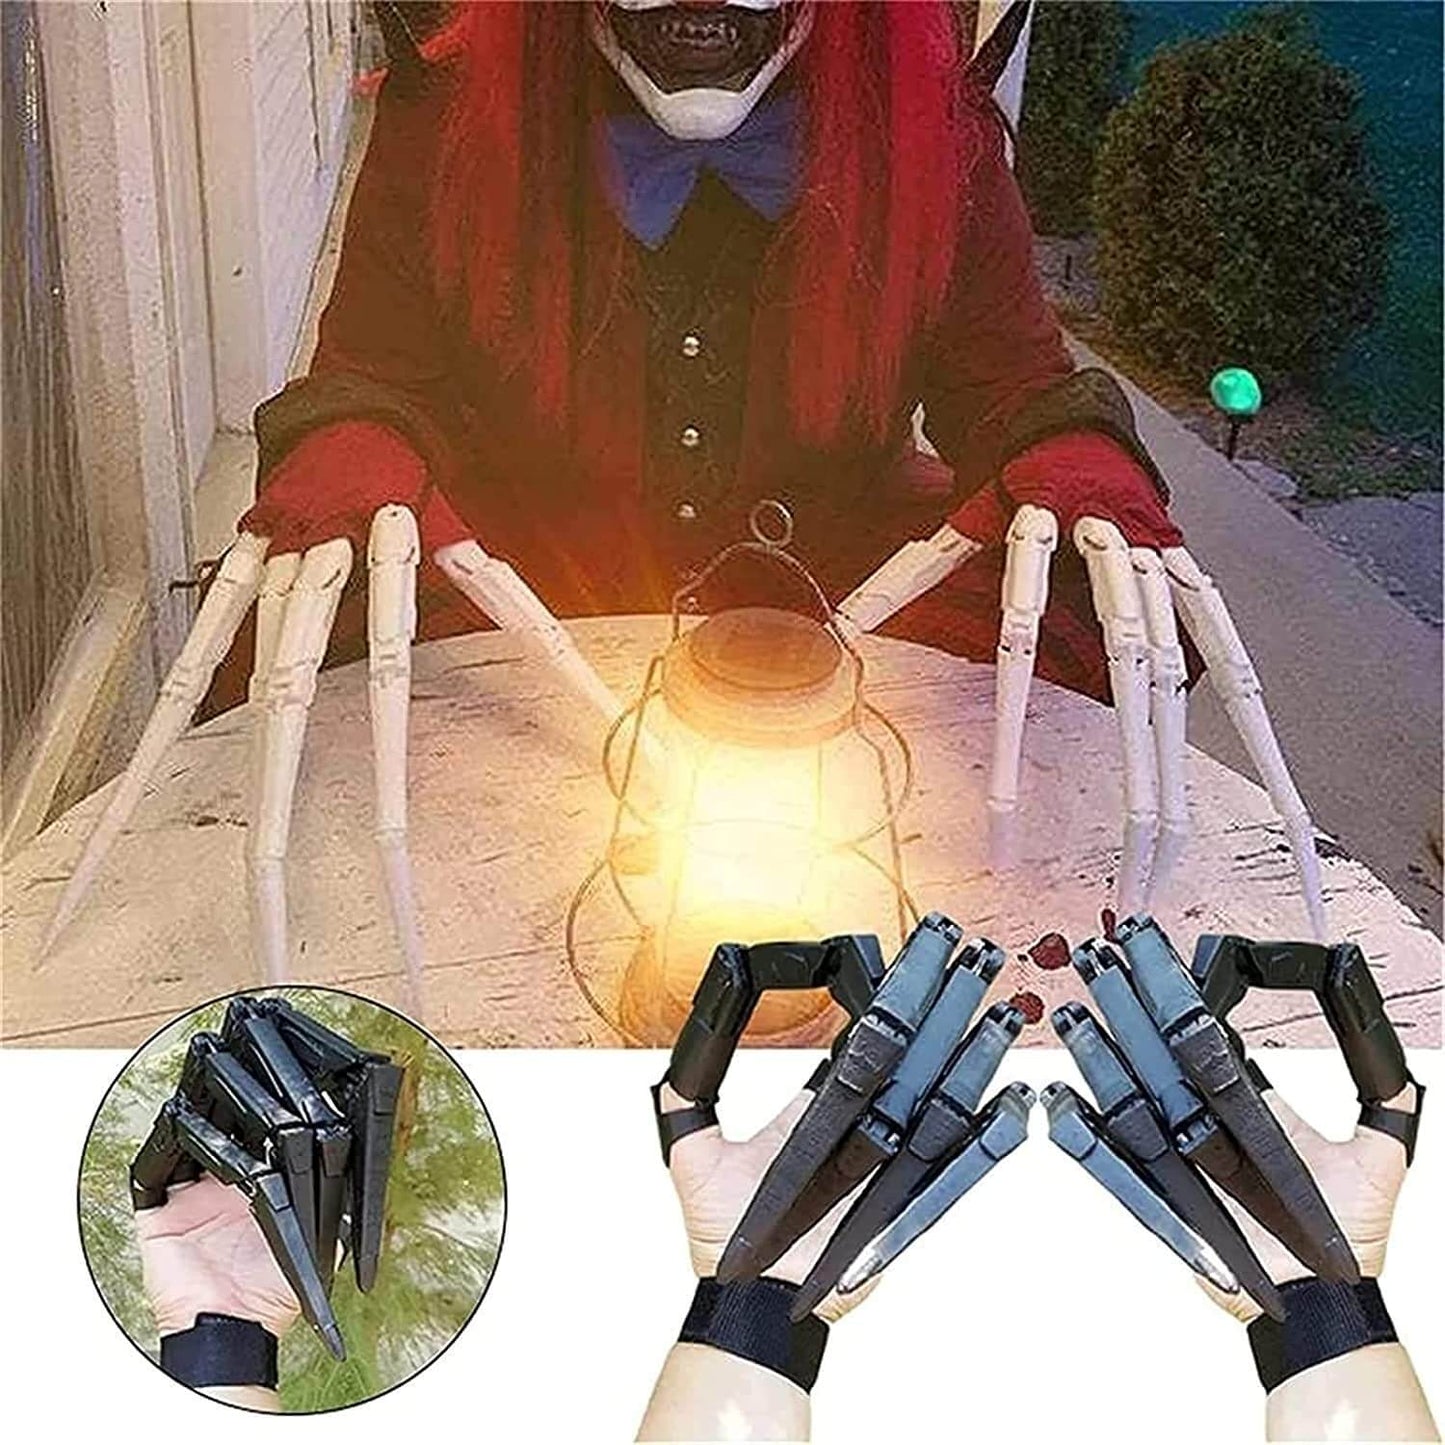 ScaryFingers -  griezelige handschoenen voor Halloween!